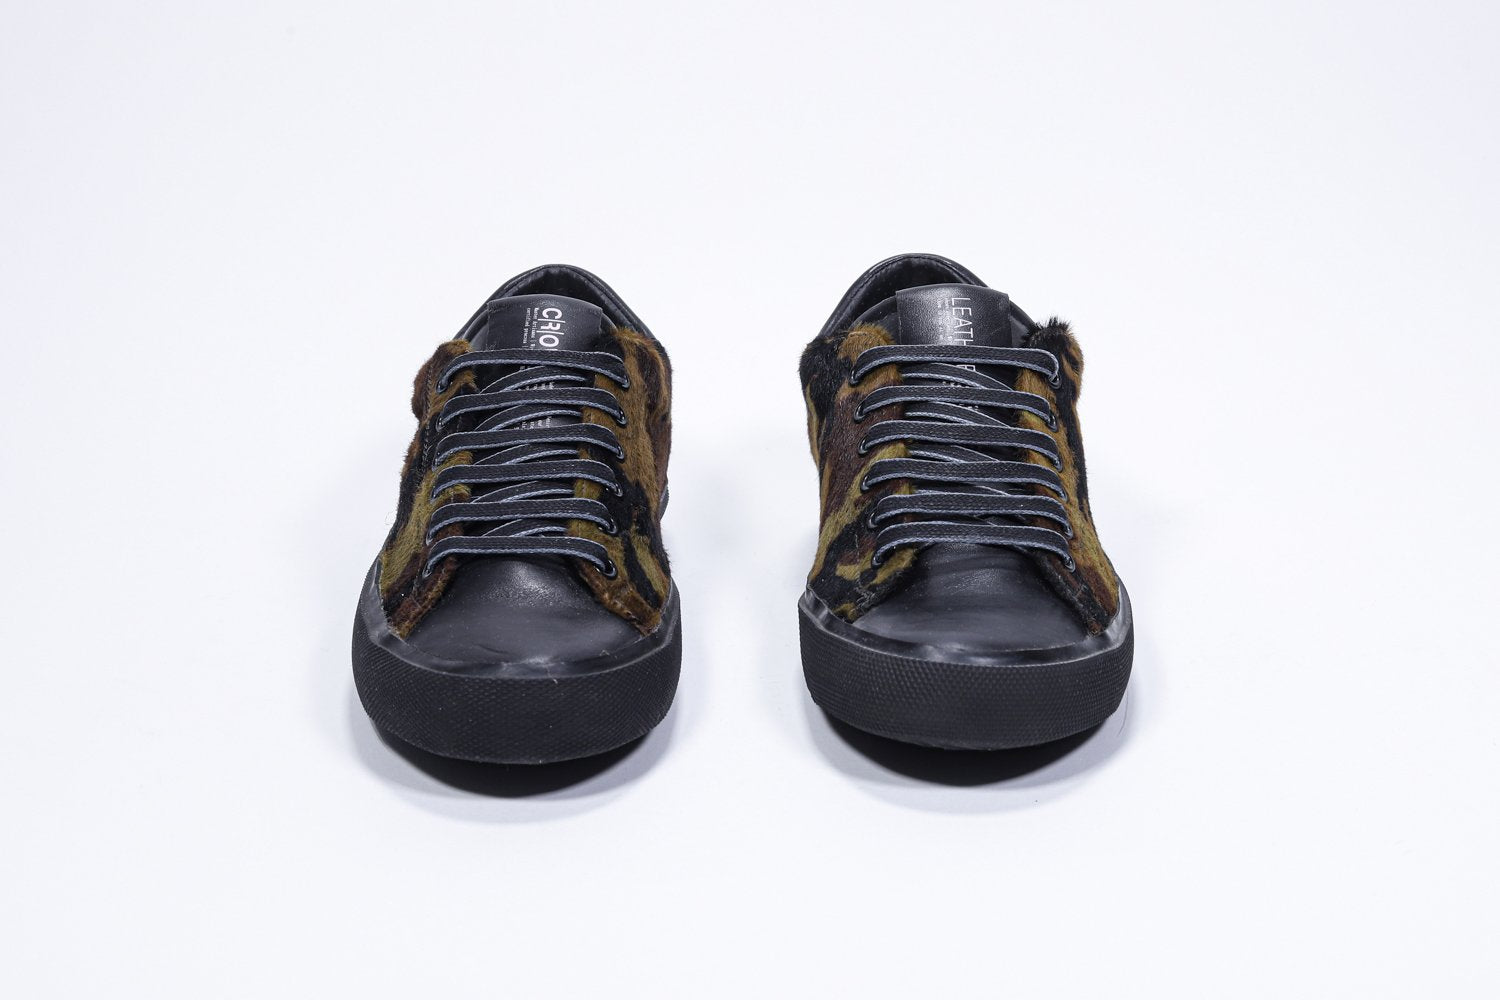 Vue avant de la chaussure basse à imprimé camouflage sneaker. Tige en cuir pleine fleur et semelle en caoutchouc noir.